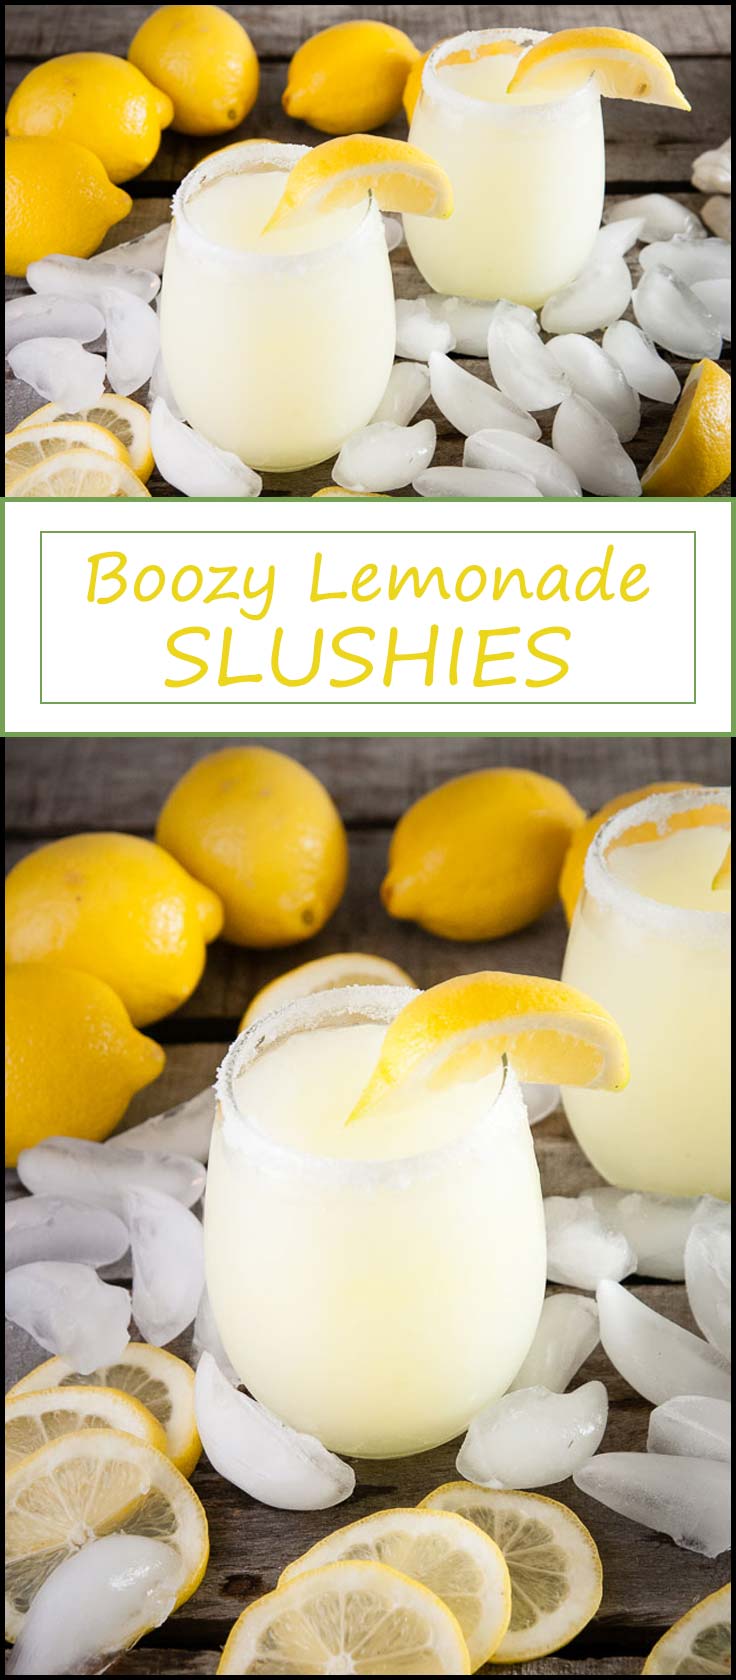 Drink recept voor boozy limonade slushies met bevroren limonade, limoncello, en citrus wodka van www.seasonedsprinkles.com